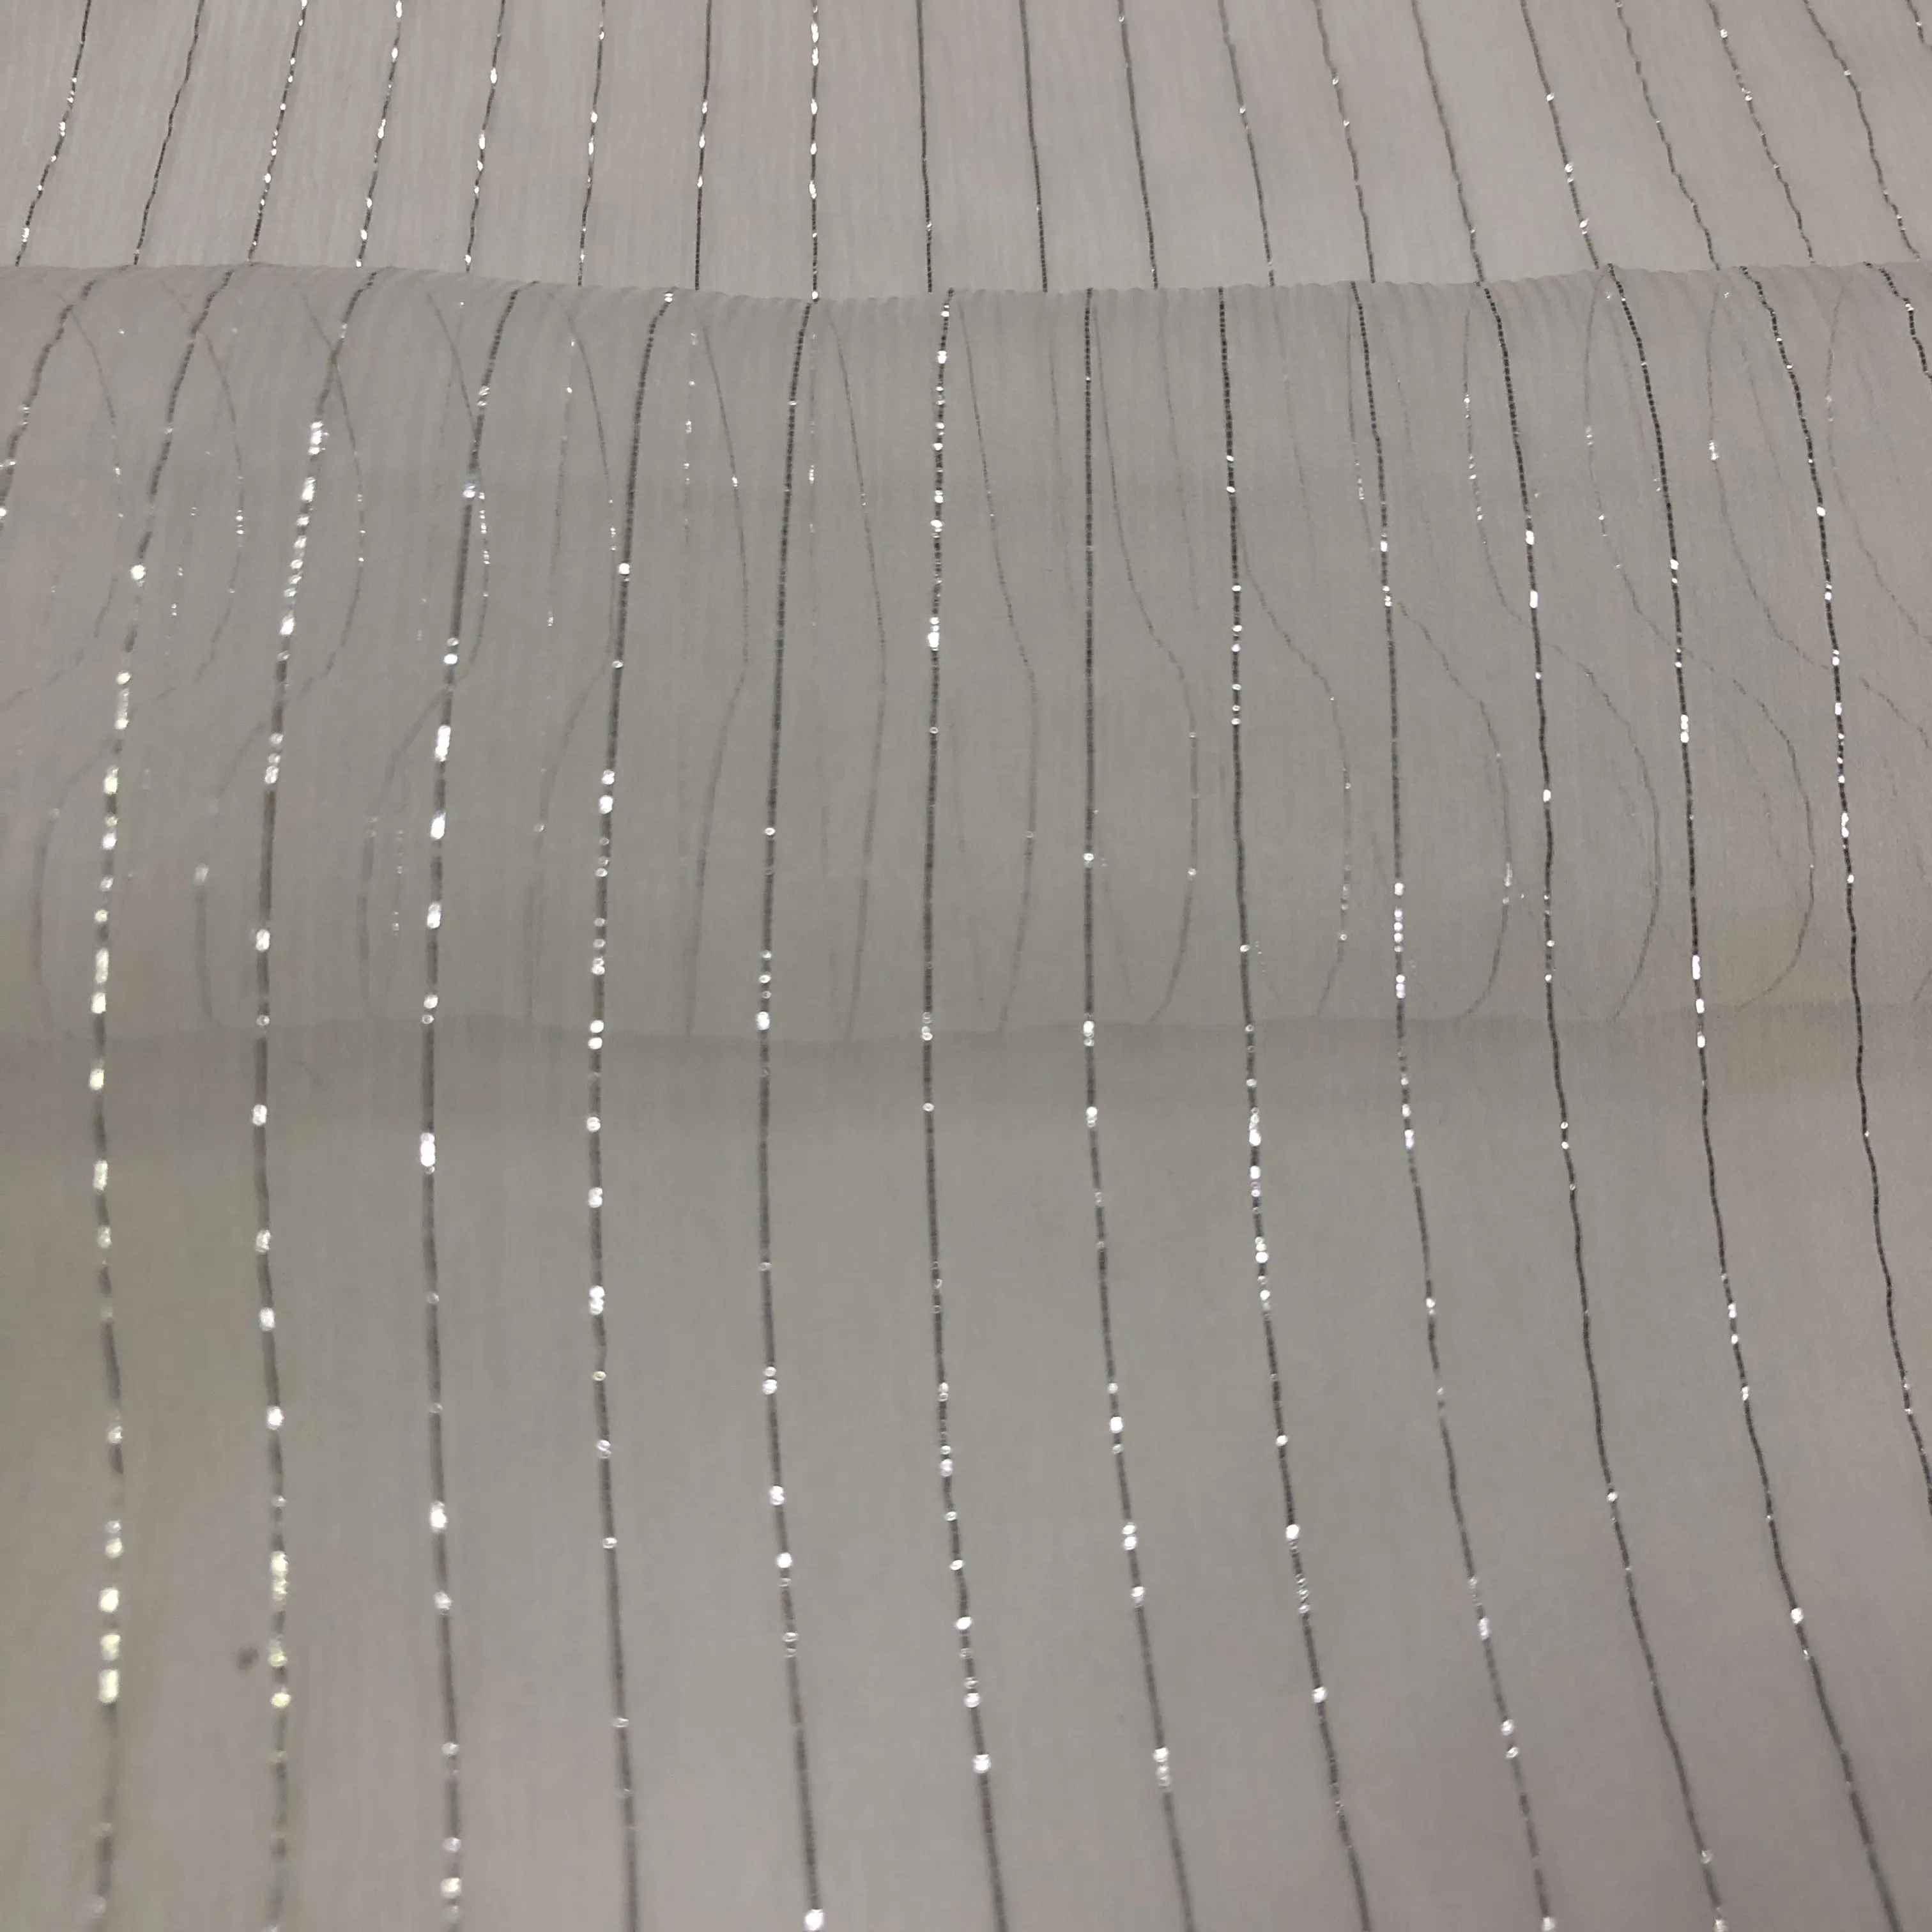 5mm 100% pura seta Chiffon stropicciato ggt con tessuto Lurex oro argento per indumento donna di alta qualità